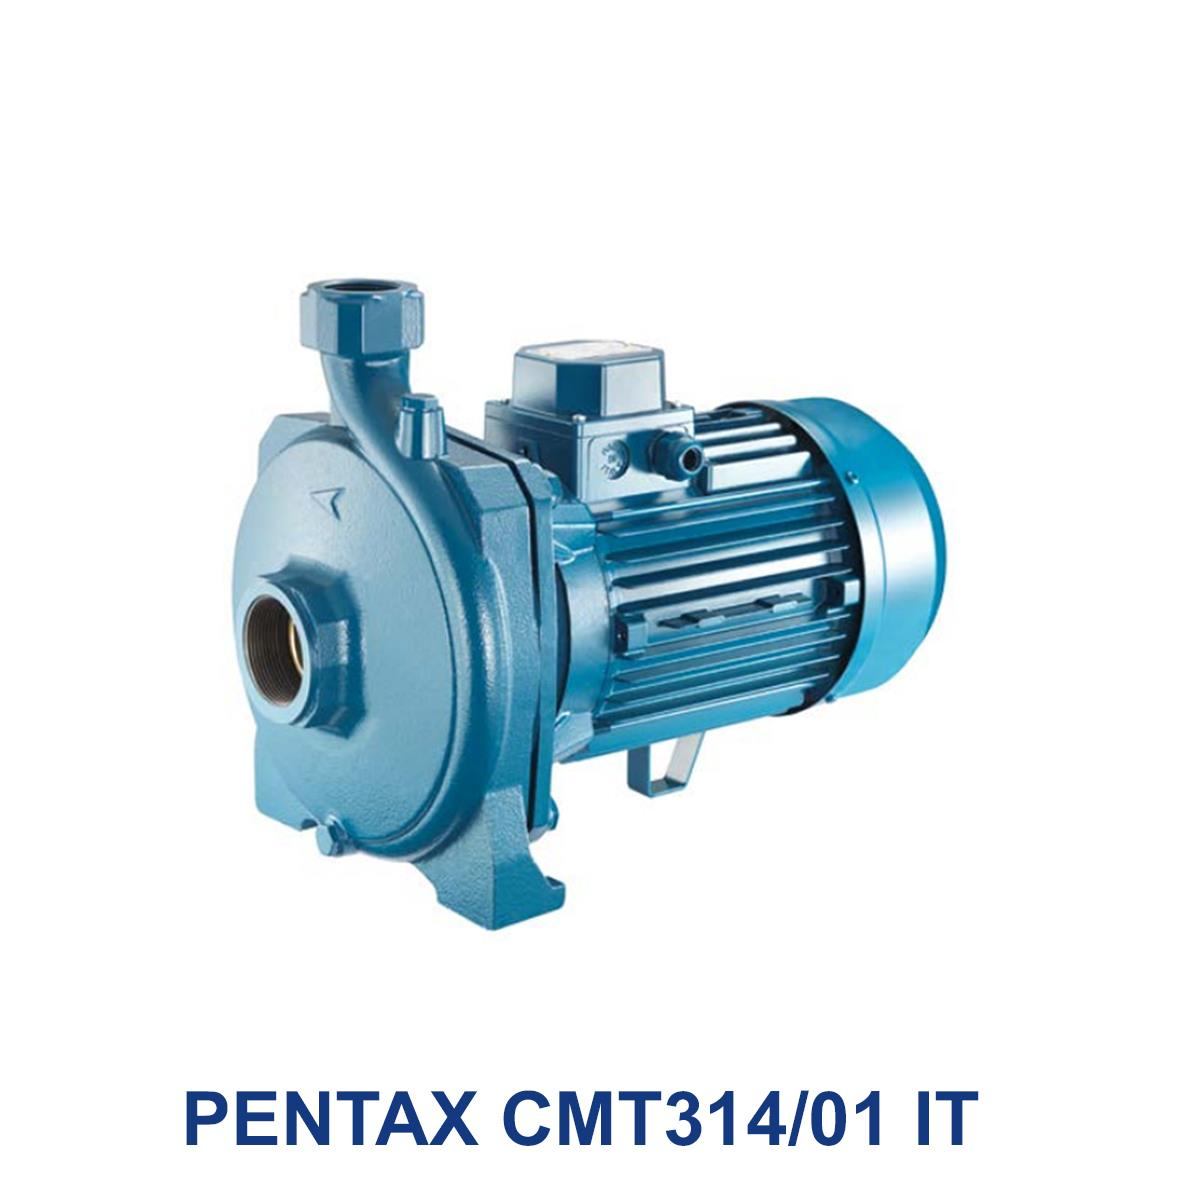 PENTAX-CMT314_01-IT